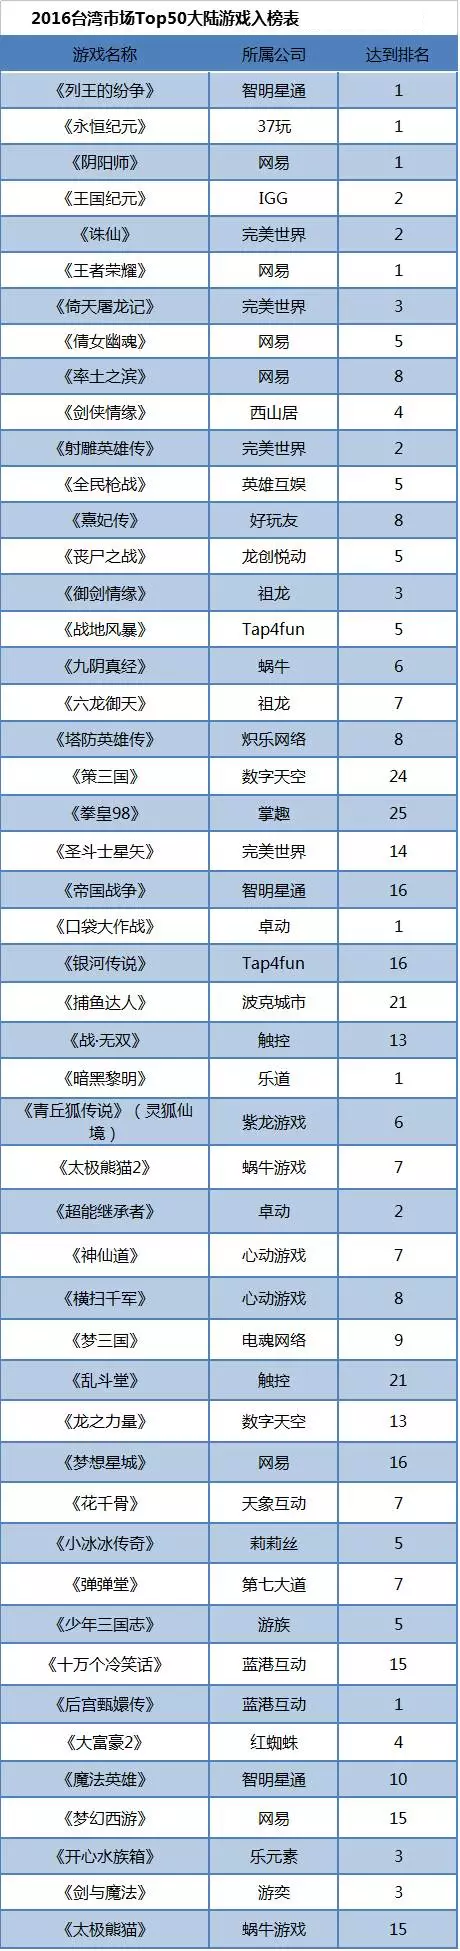 在台湾地区表现出色的大陆游戏统计